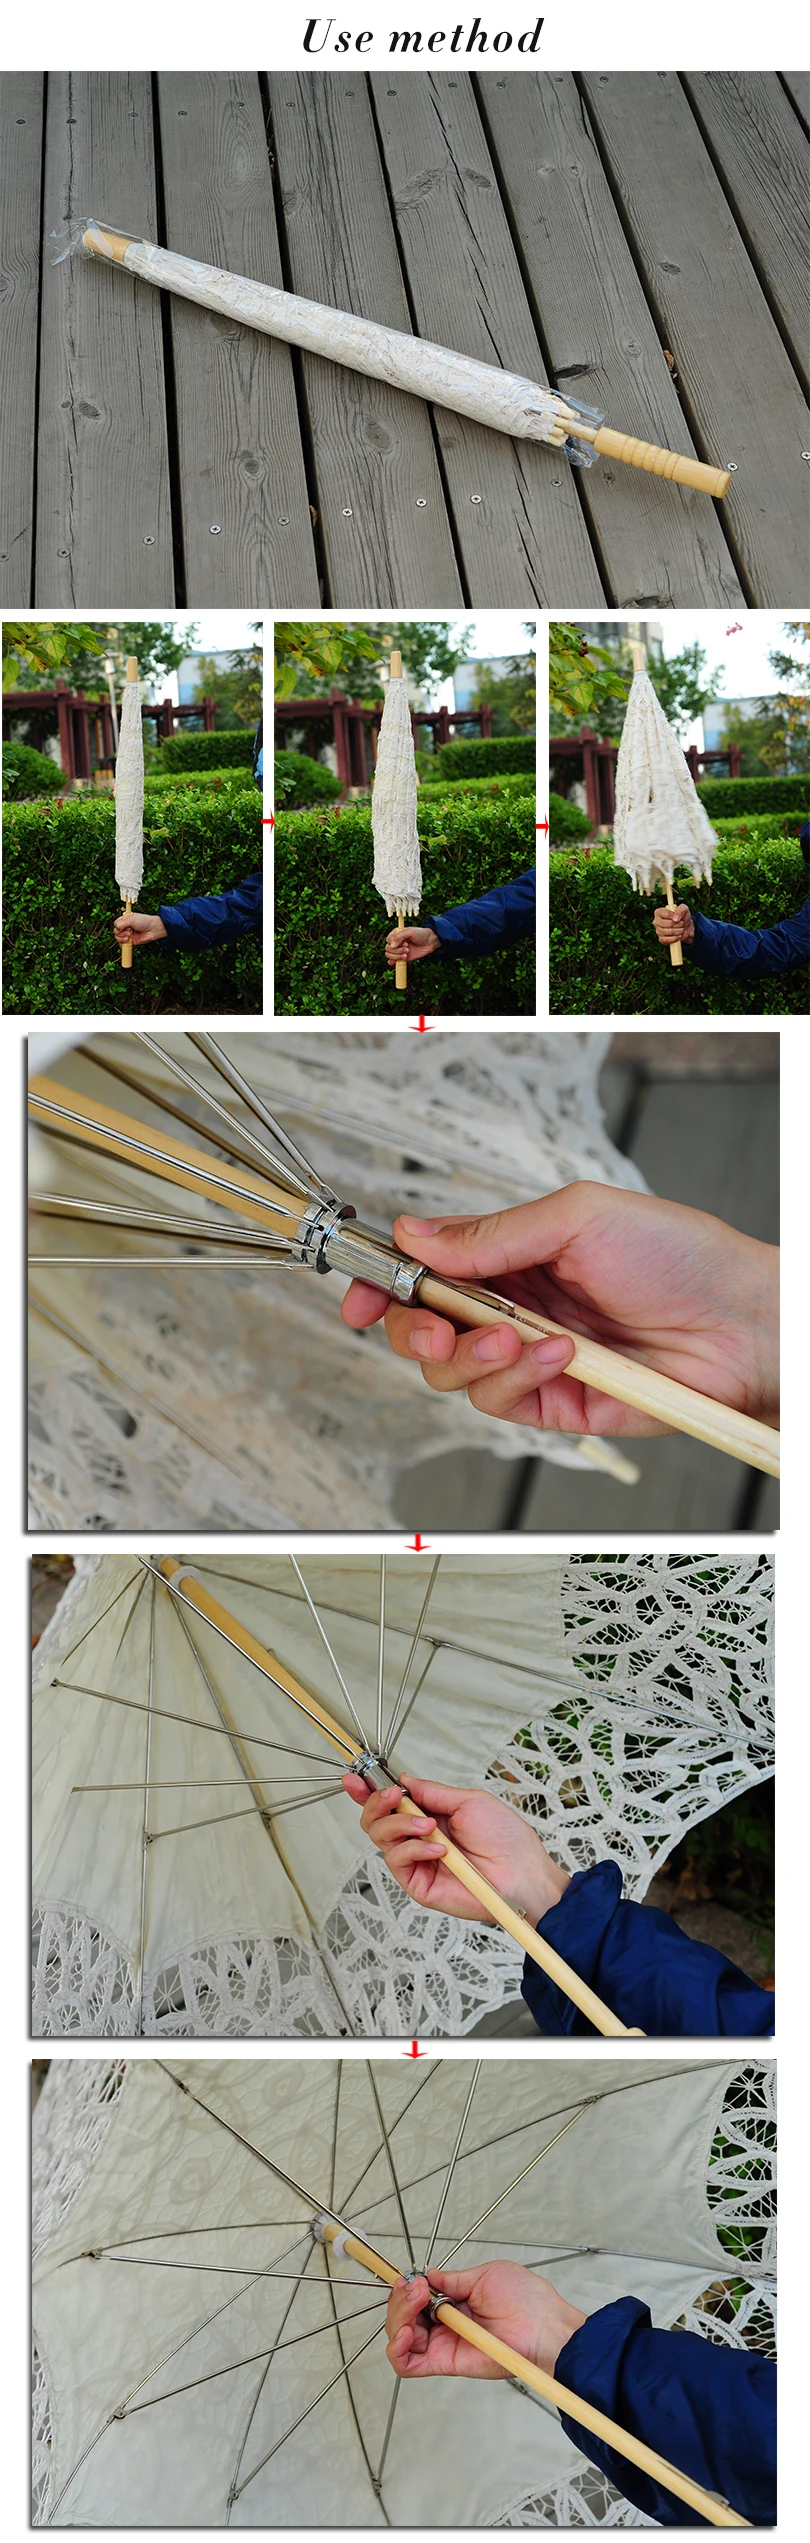 QUNYINGXIU ручной работы, Высококачественный кружевной зонтик с цветами, кружевной зонтик для фотосъемки, танцев, свадебного украшения, зонтик от солнца